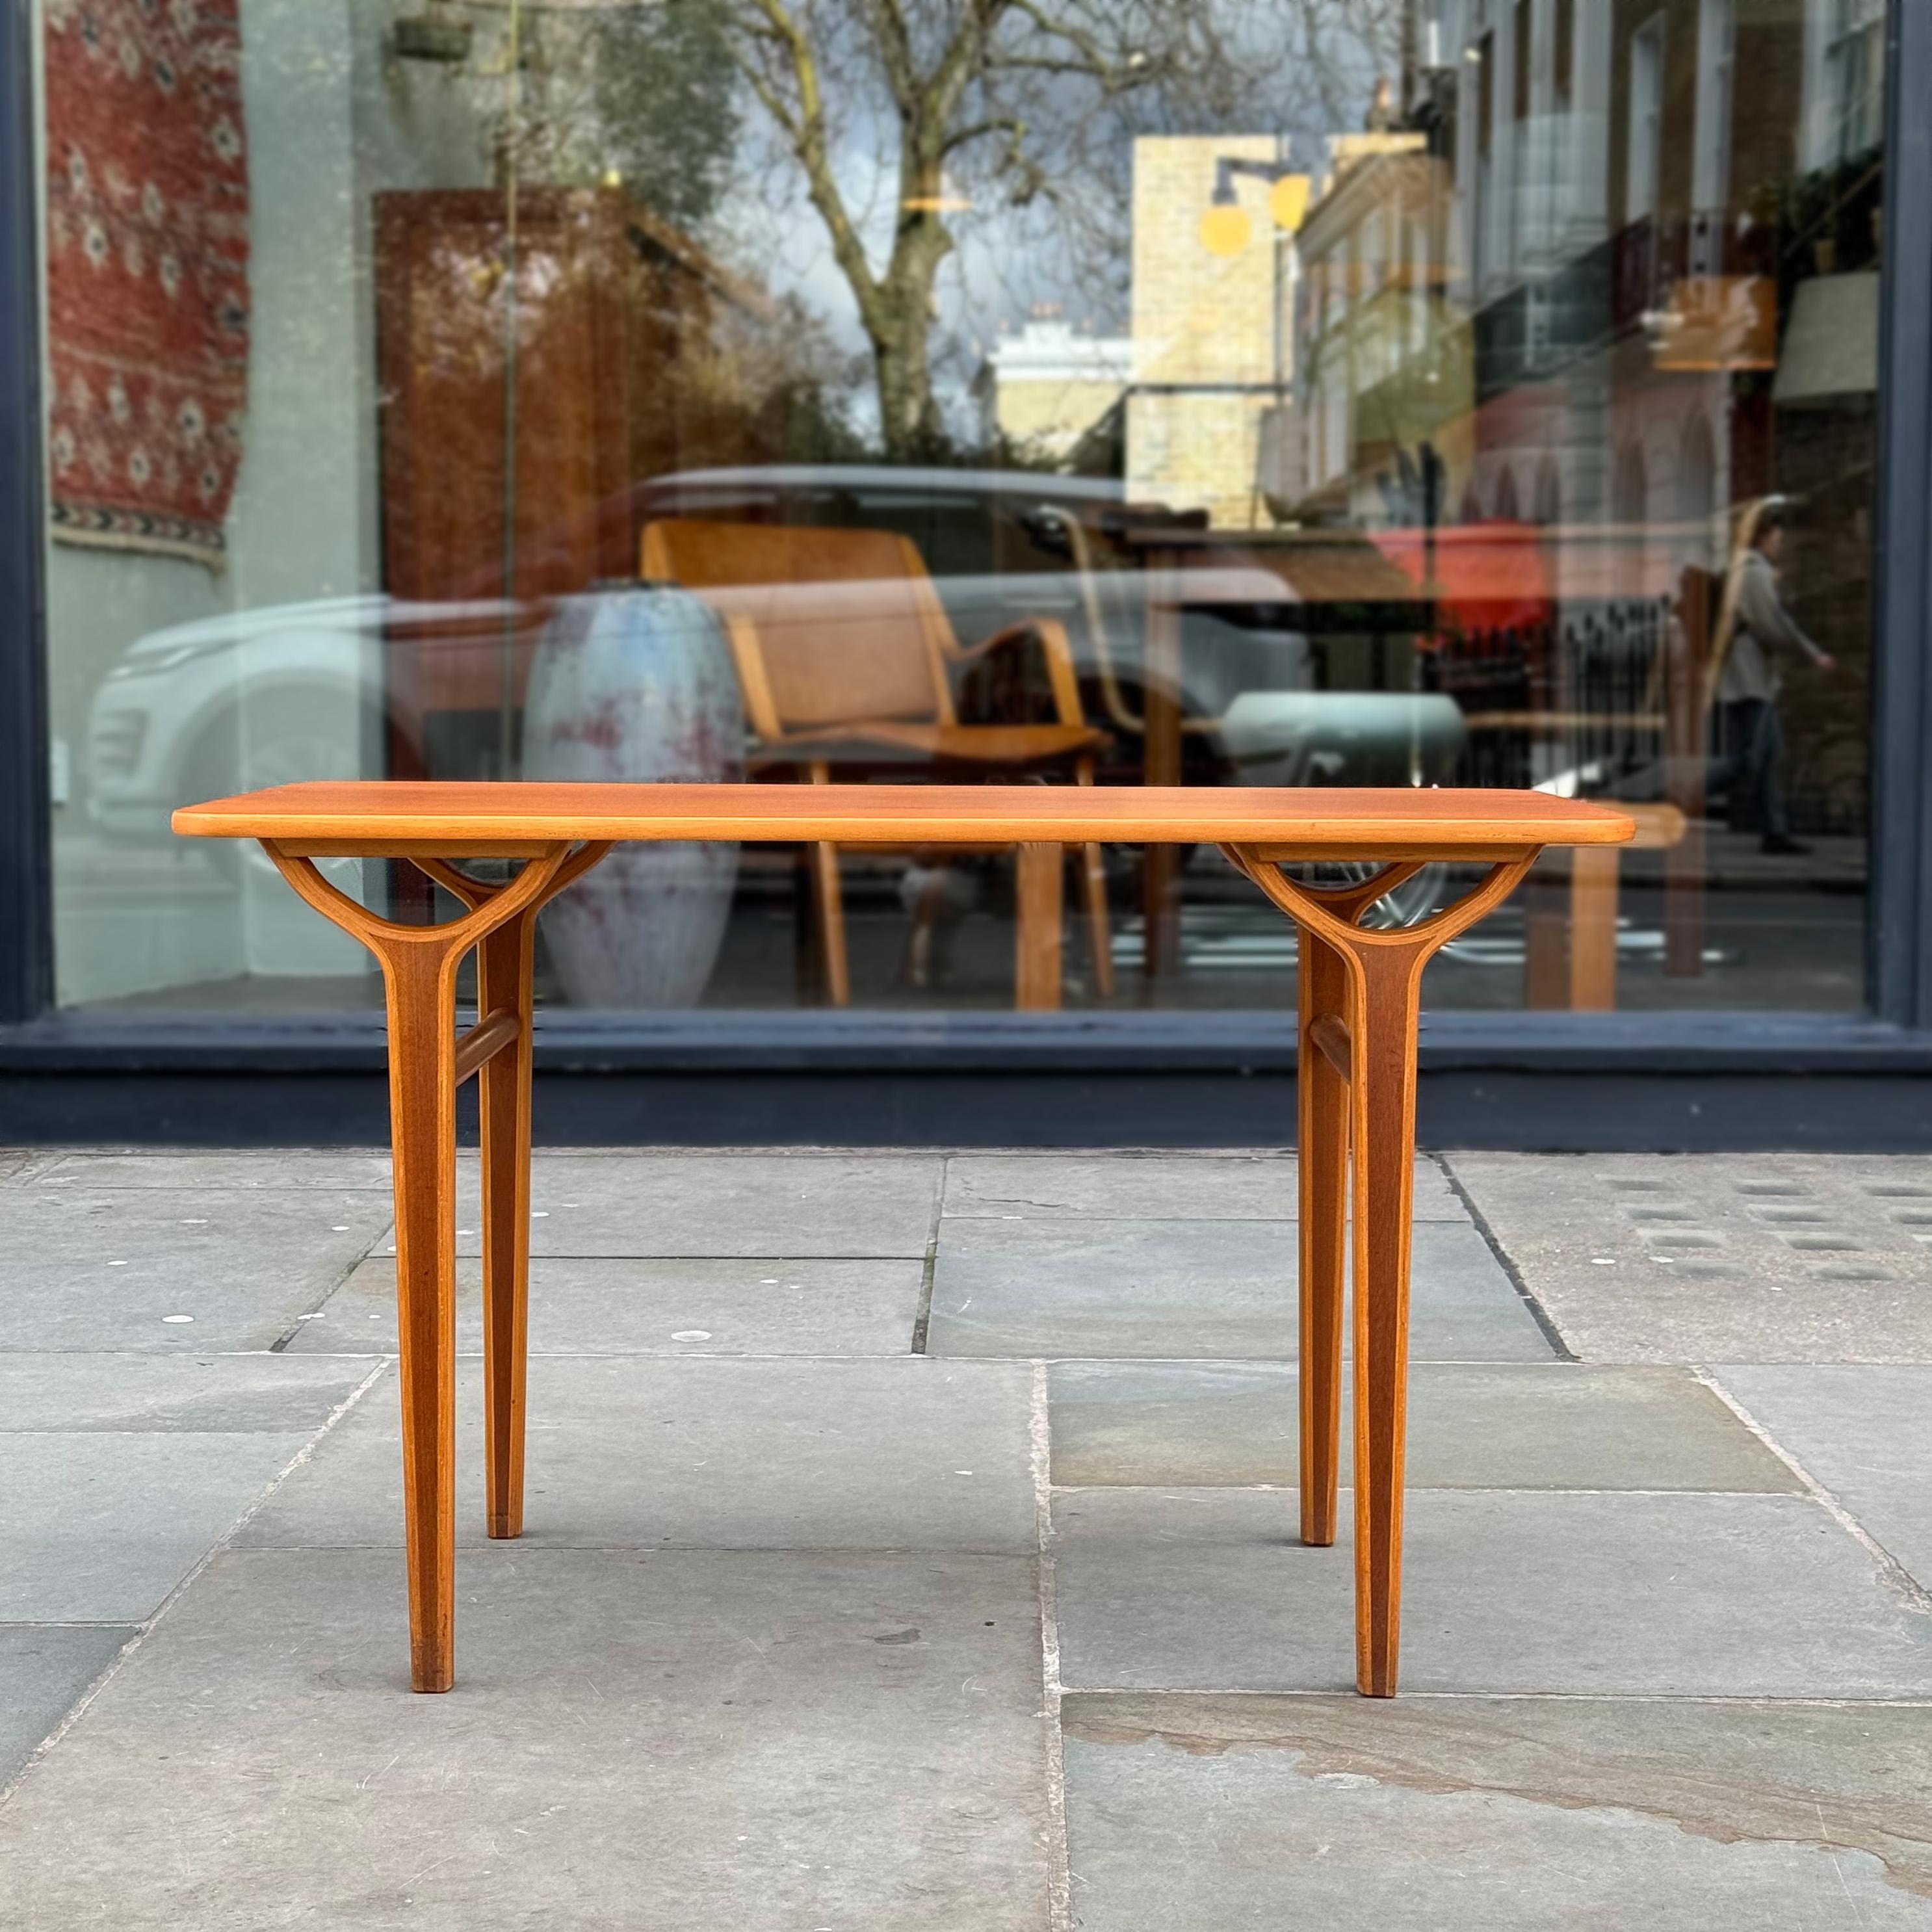 Ein AX-Tisch, entworfen von Peter Hvidt & Orla Mølgaard-Nielsen. 

Dieser Tisch wurde in den 1950er Jahren für Fritz Hansen hergestellt. Peter Hvidt & Orla Mølgaard-Nielsen entwarfen ihre AX